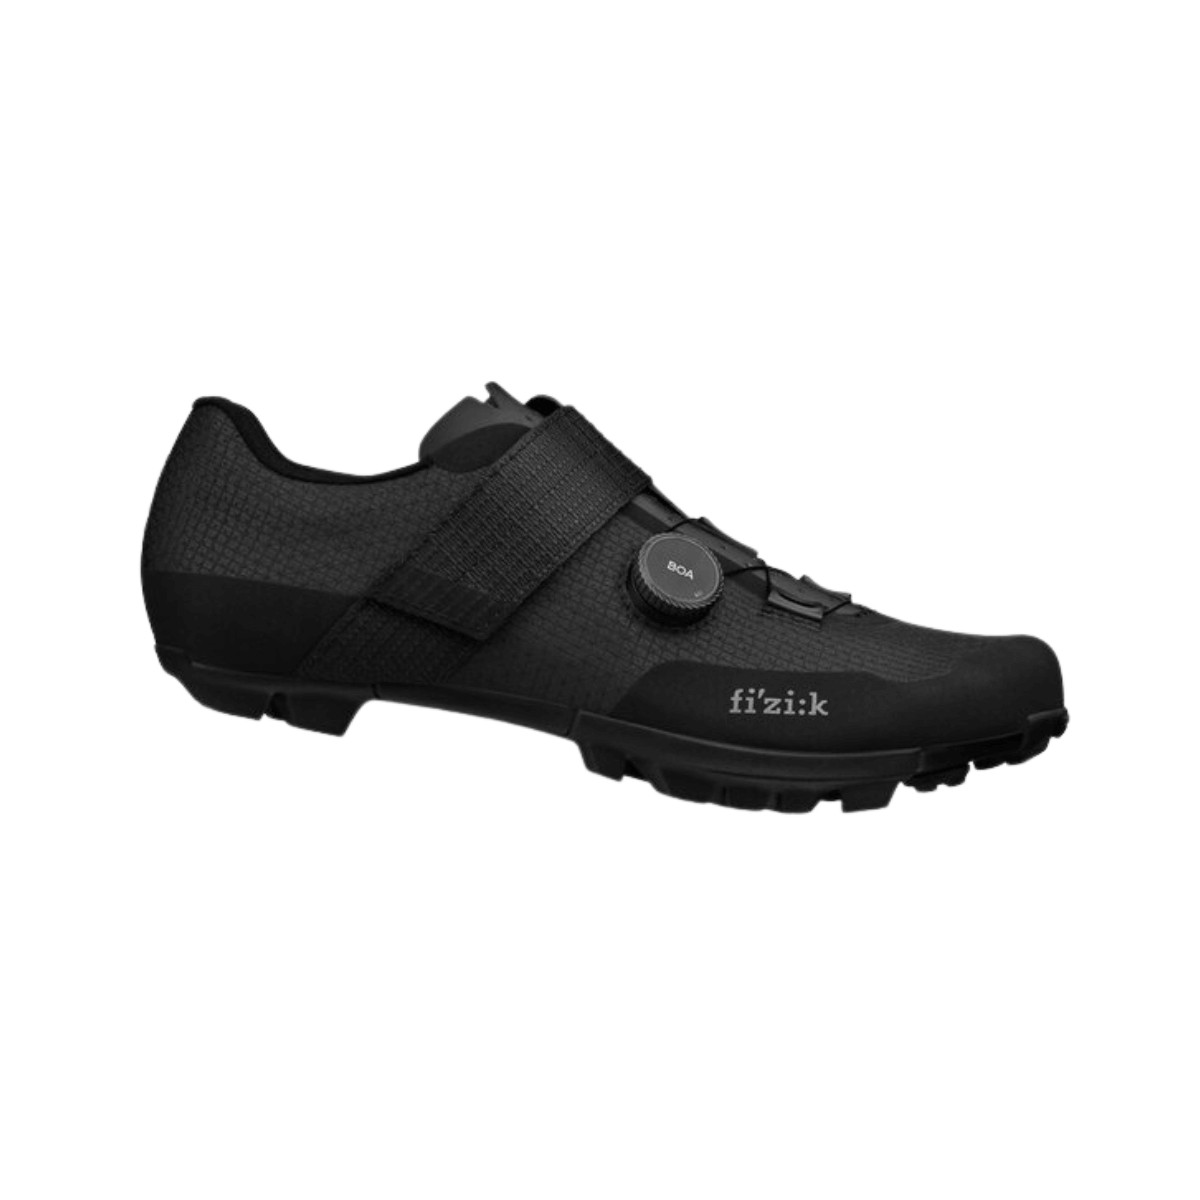 Zapatillas Fizik Vento Ferox Carbon Negro, Talla 41 - EUR